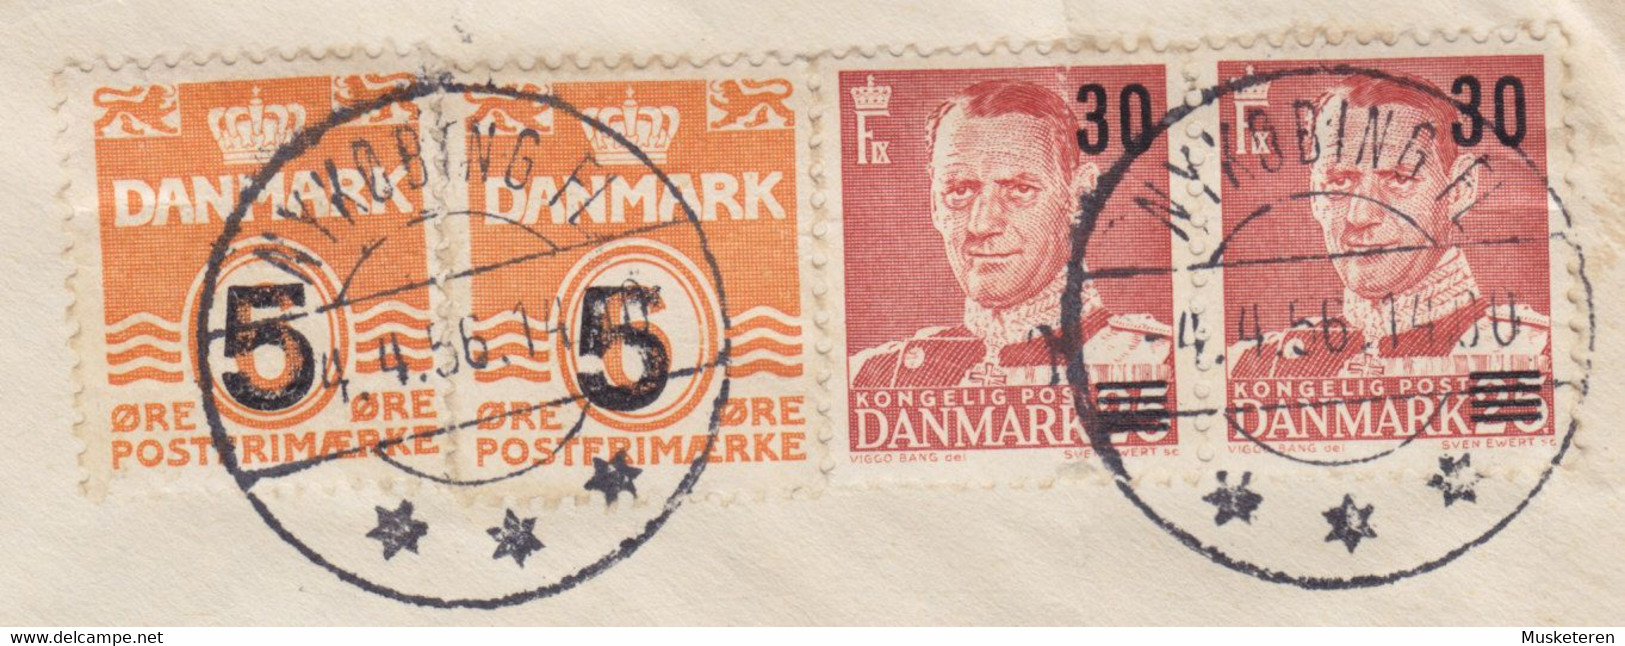 Denmark Registered Einschreiben Label & Brotype NYKØBING Fl. 1956 Cover Brief ERROR Variety '5' W. Weak Print (5 Scans) - Plaatfouten En Curiosa